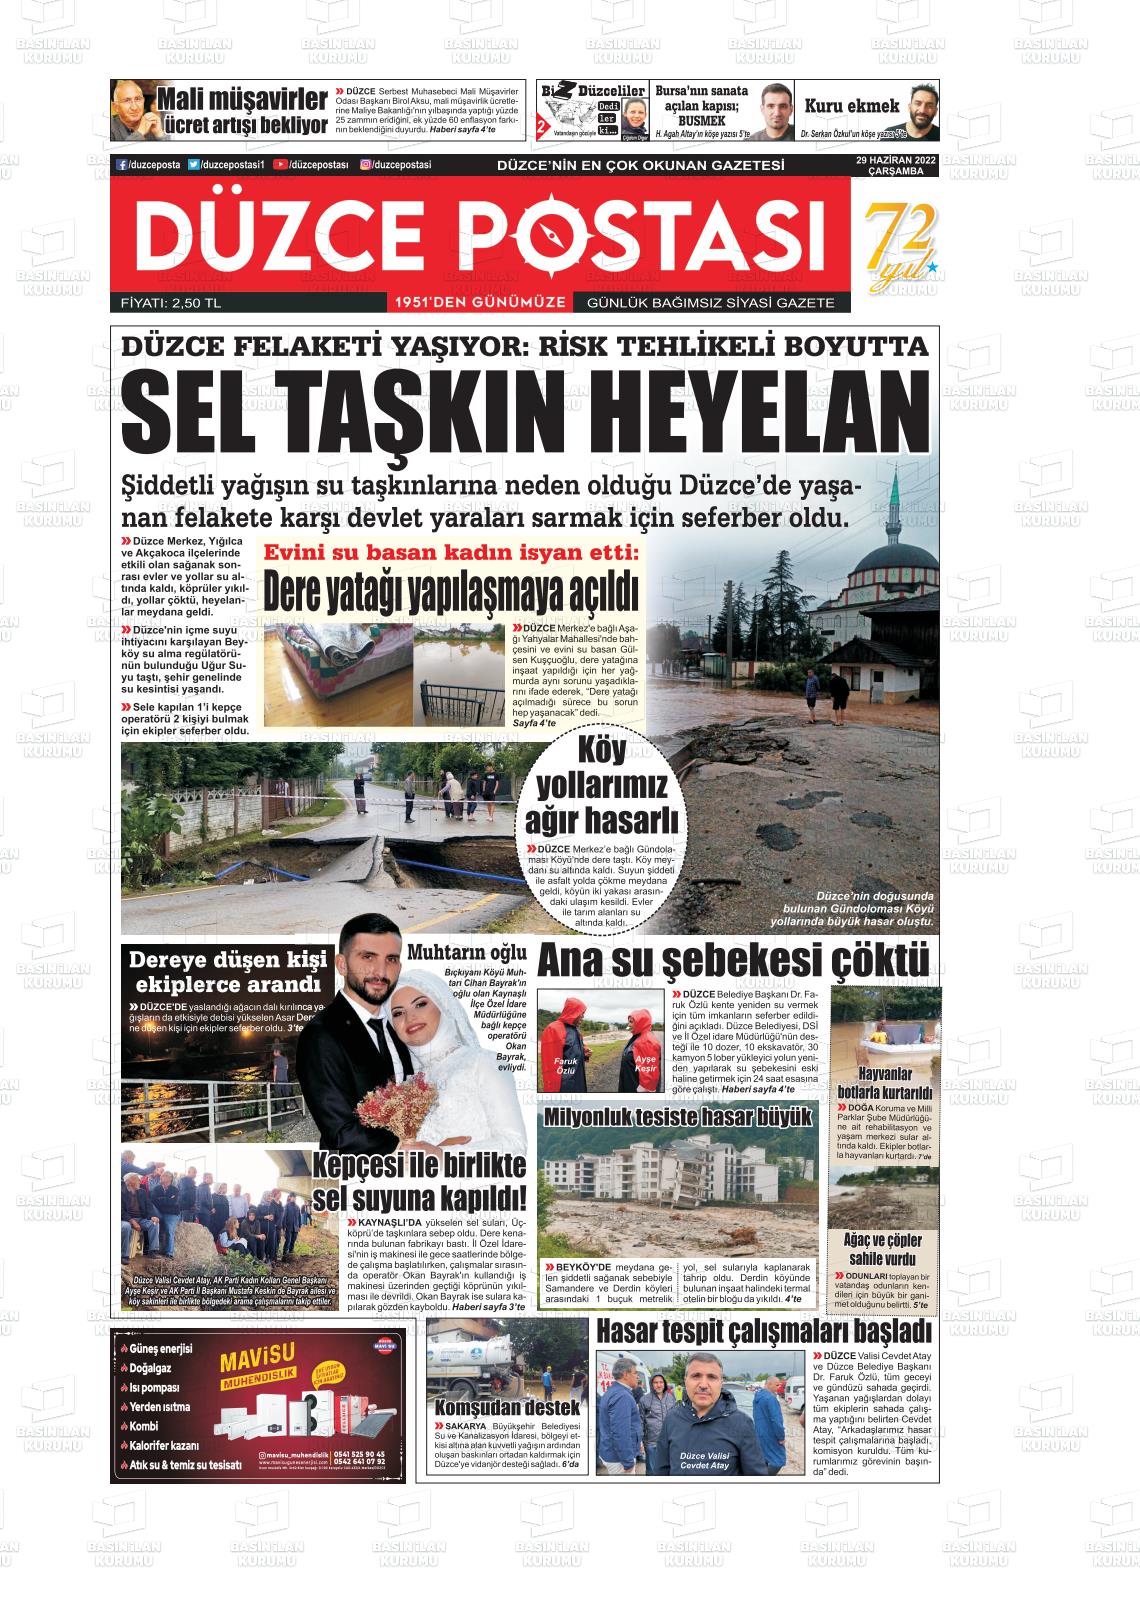 29 Haziran 2022 Düzce Postası Gazete Manşeti